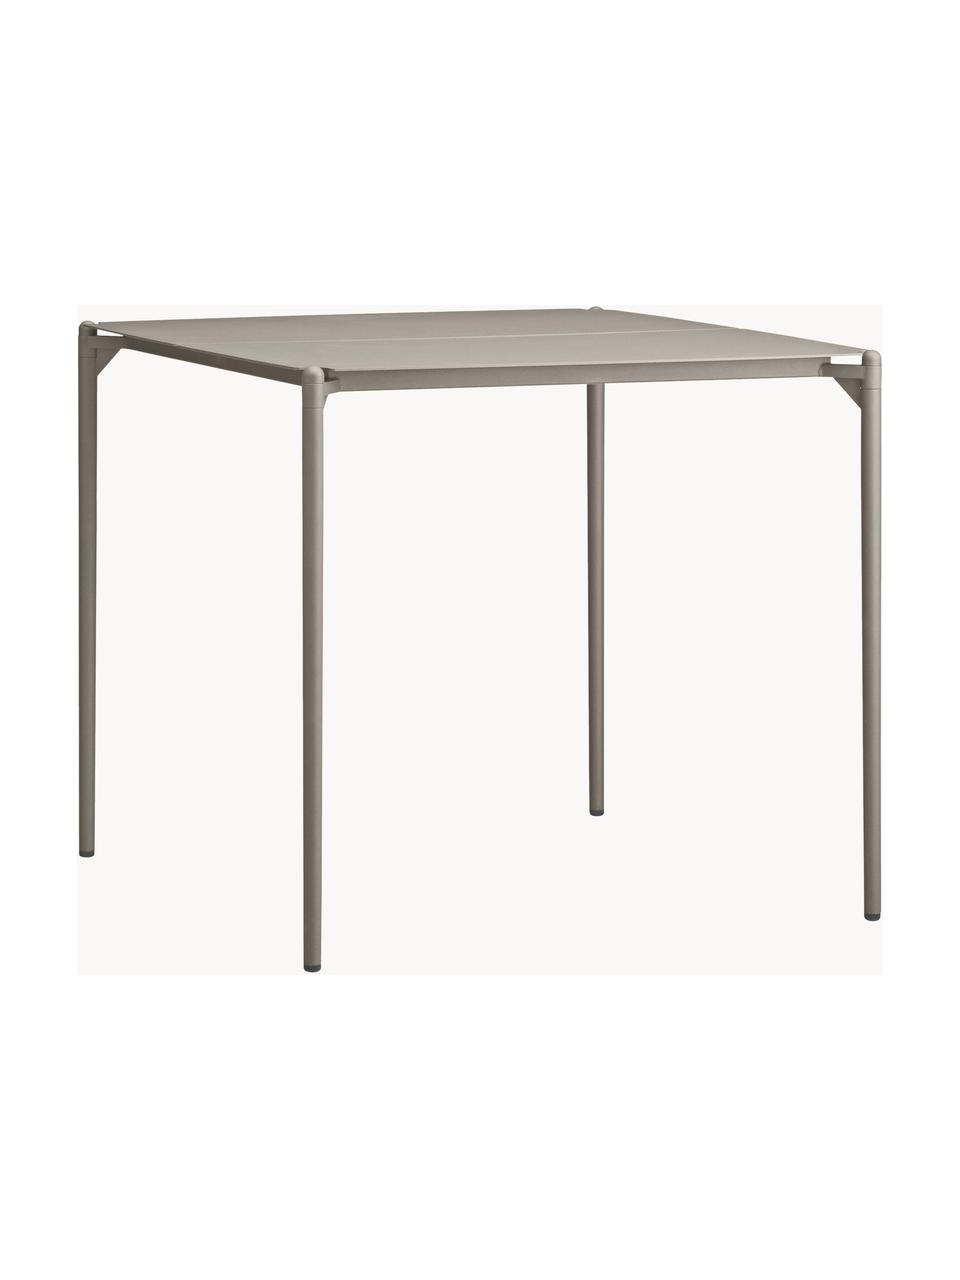 Gartentisch Novo aus Metall, Stahl, beschichtet, Beige, B 80 x T 80 cm